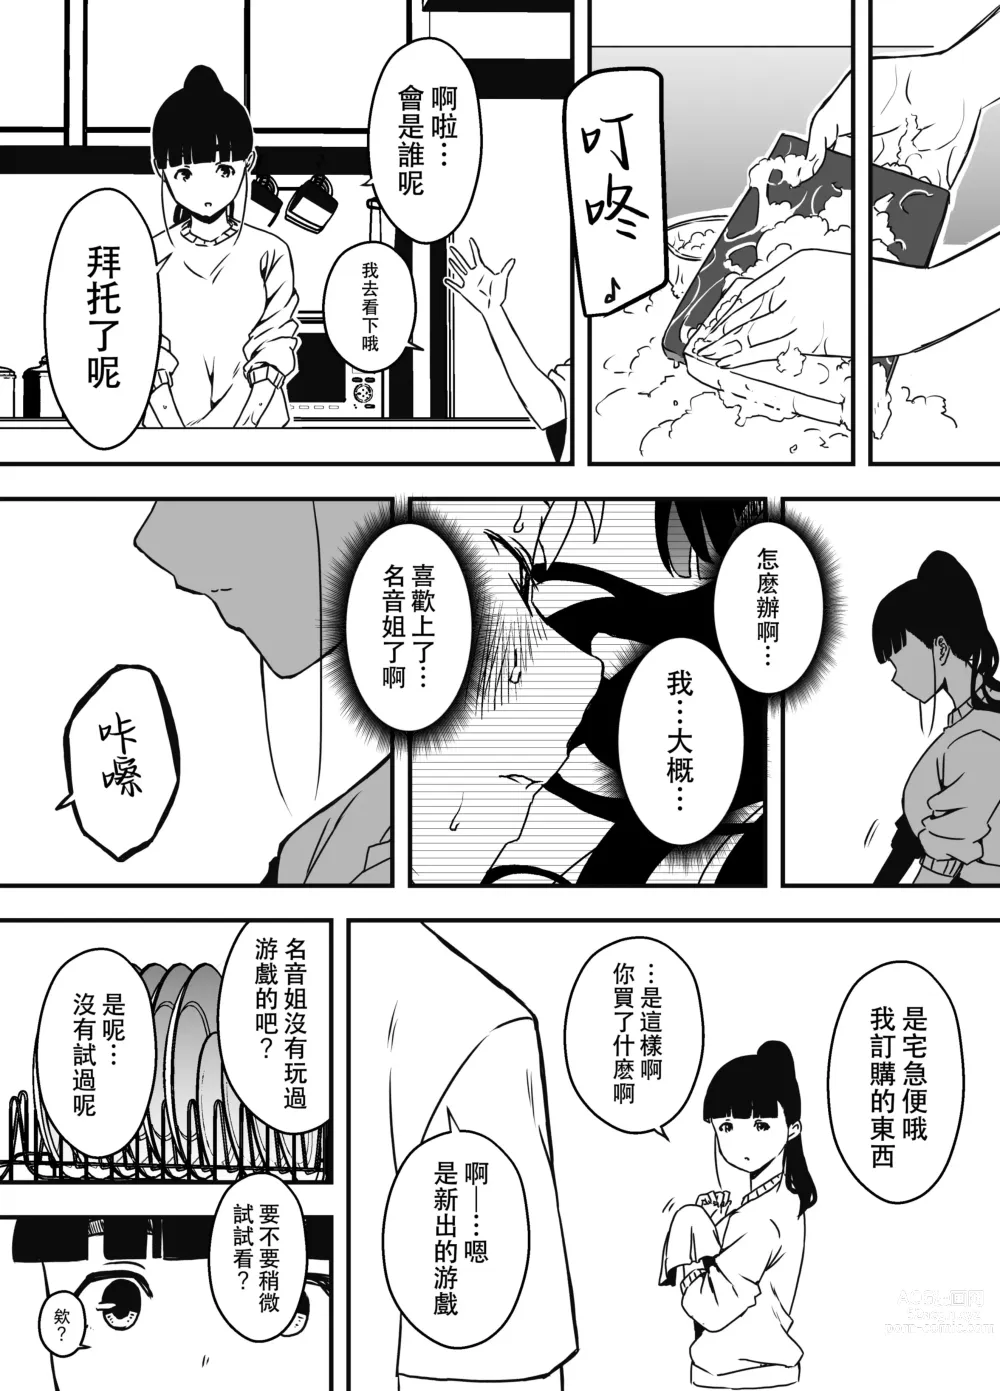 Page 22 of doujinshi Giri no Ane to no 7-kakan Seikatsu - 5